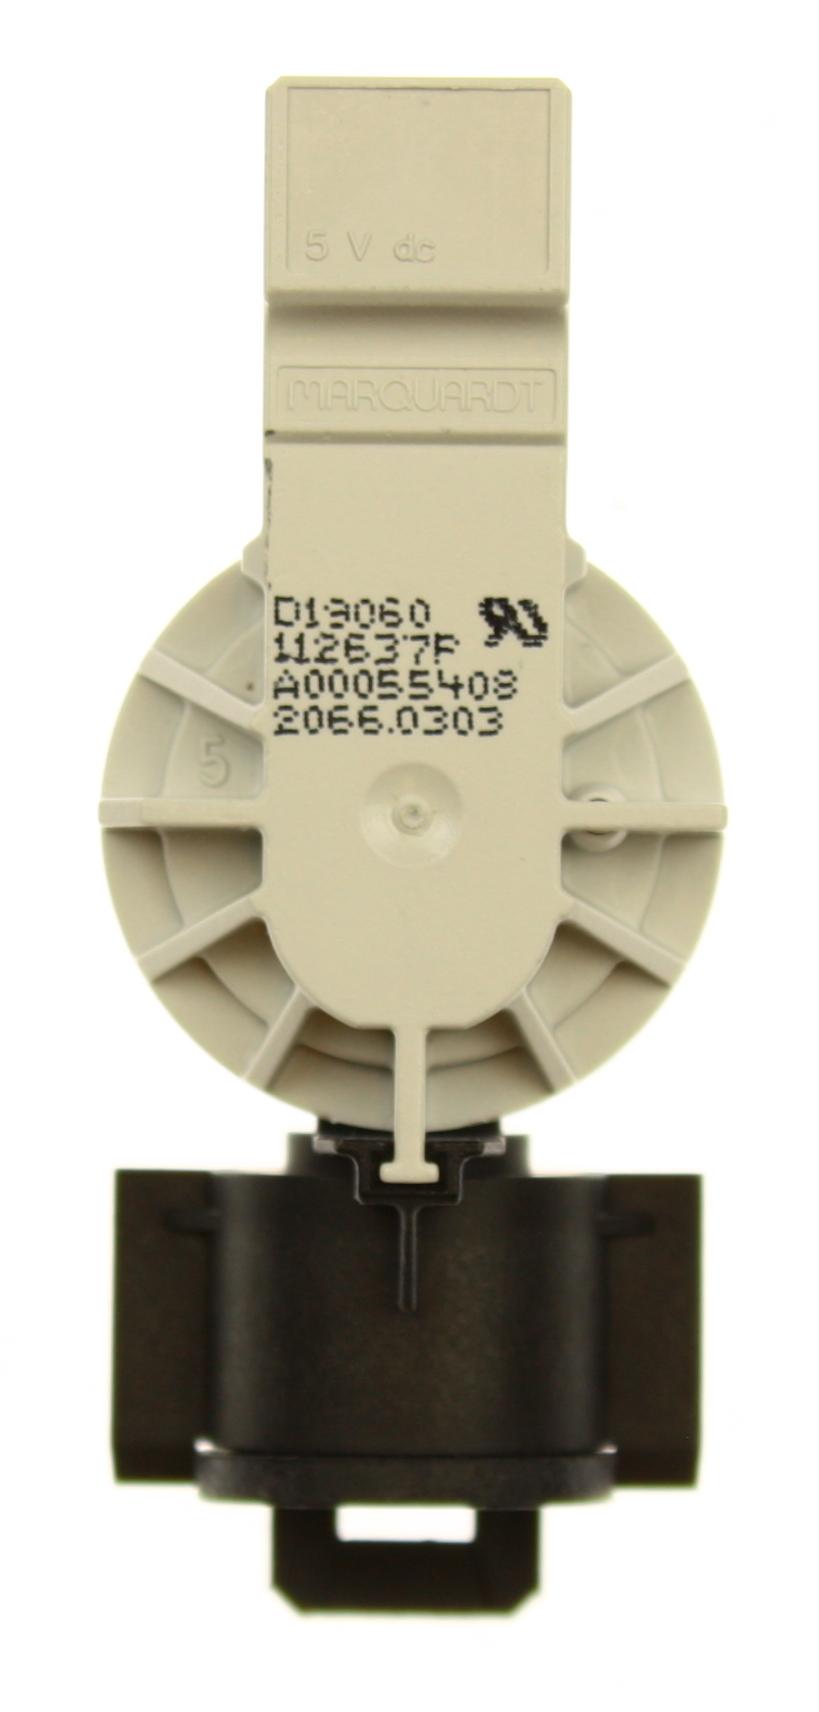 подробная фотография Electrolux (Электролюкс) 4055346060 ремкомплект модификации датчика давления 